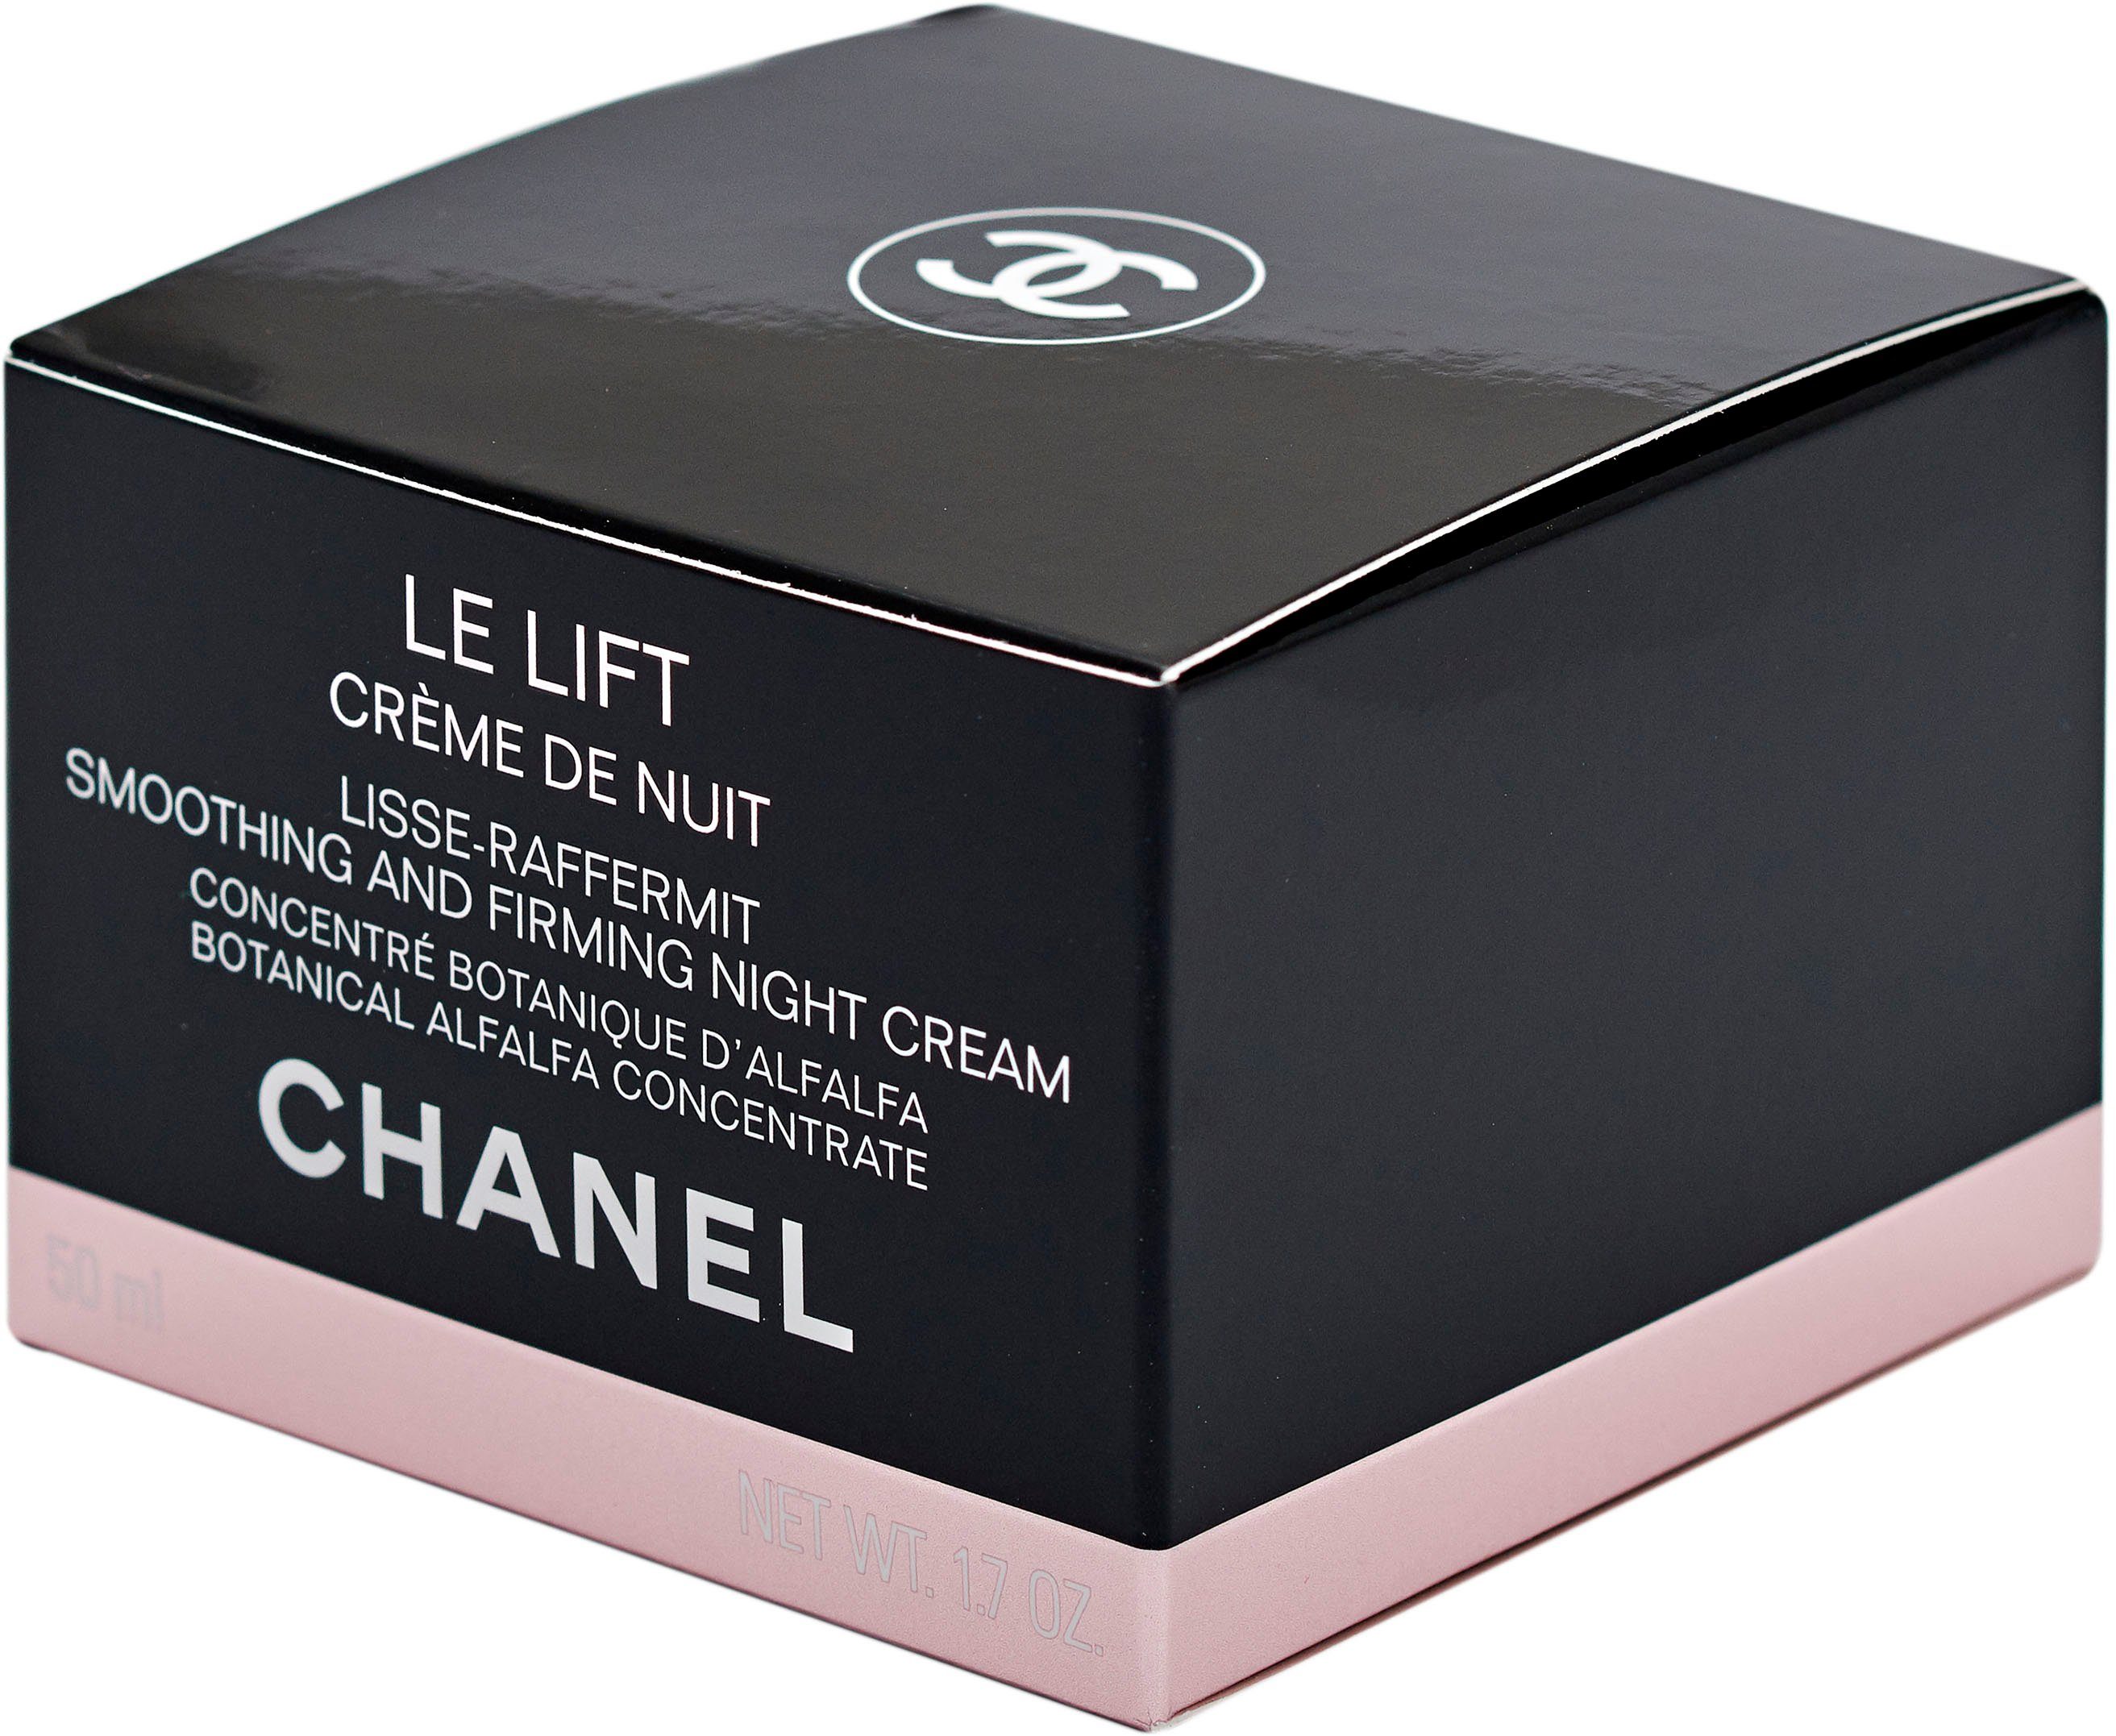 CHANEL Le De Chanel Creme Nuit Nachtcreme Lift